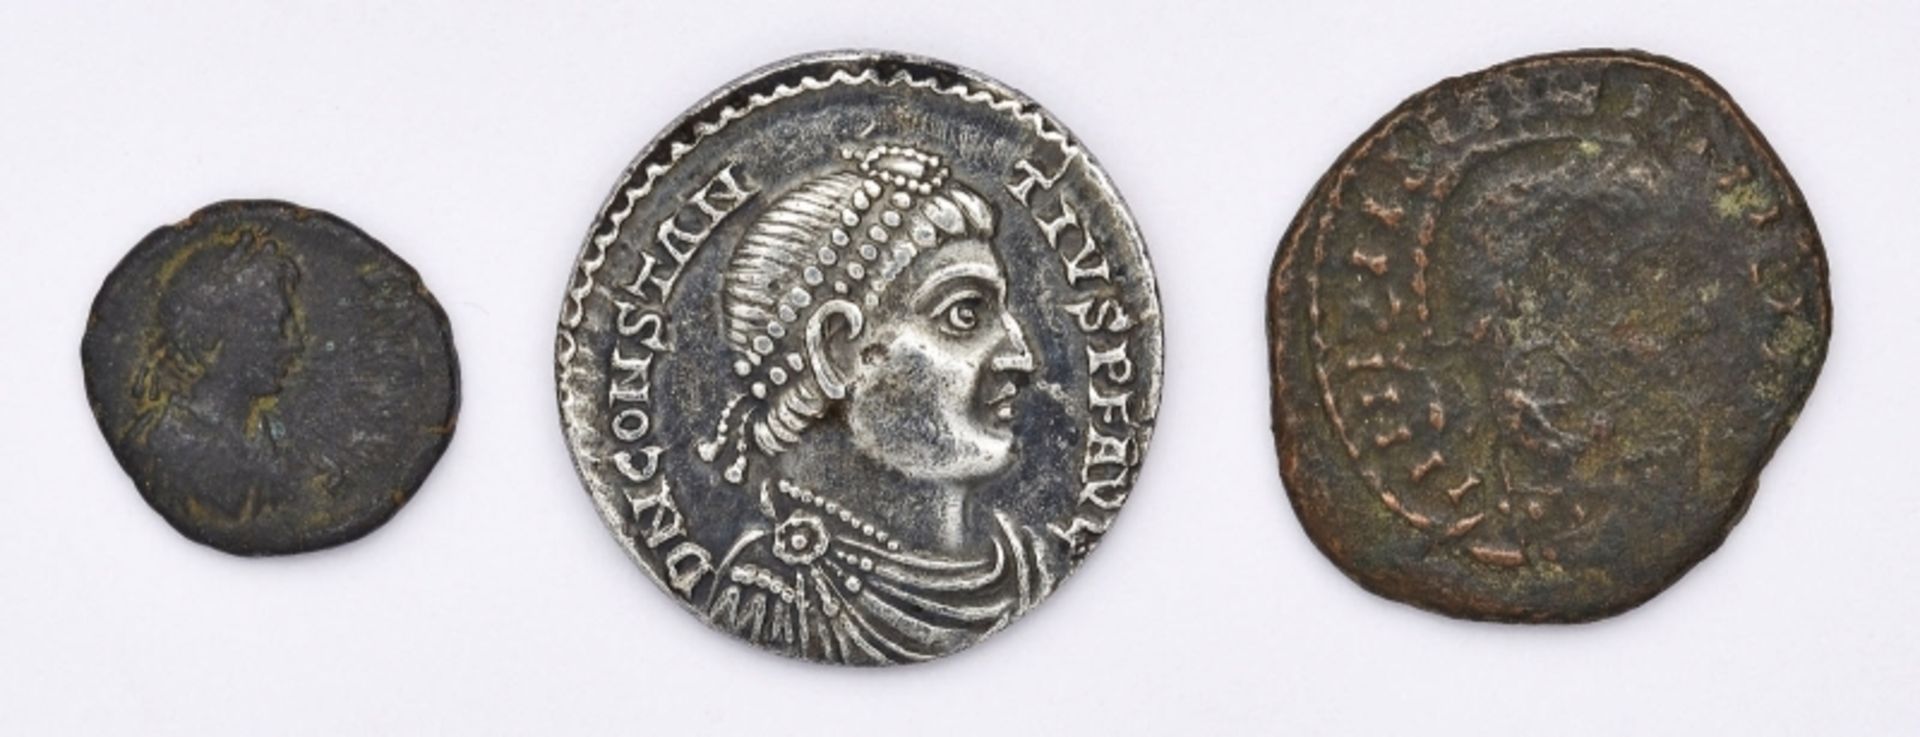 Konvolut v. 3 versch. antiken Münzen d. Röm. Kaiserzeit 5. Jh. n. Chr.